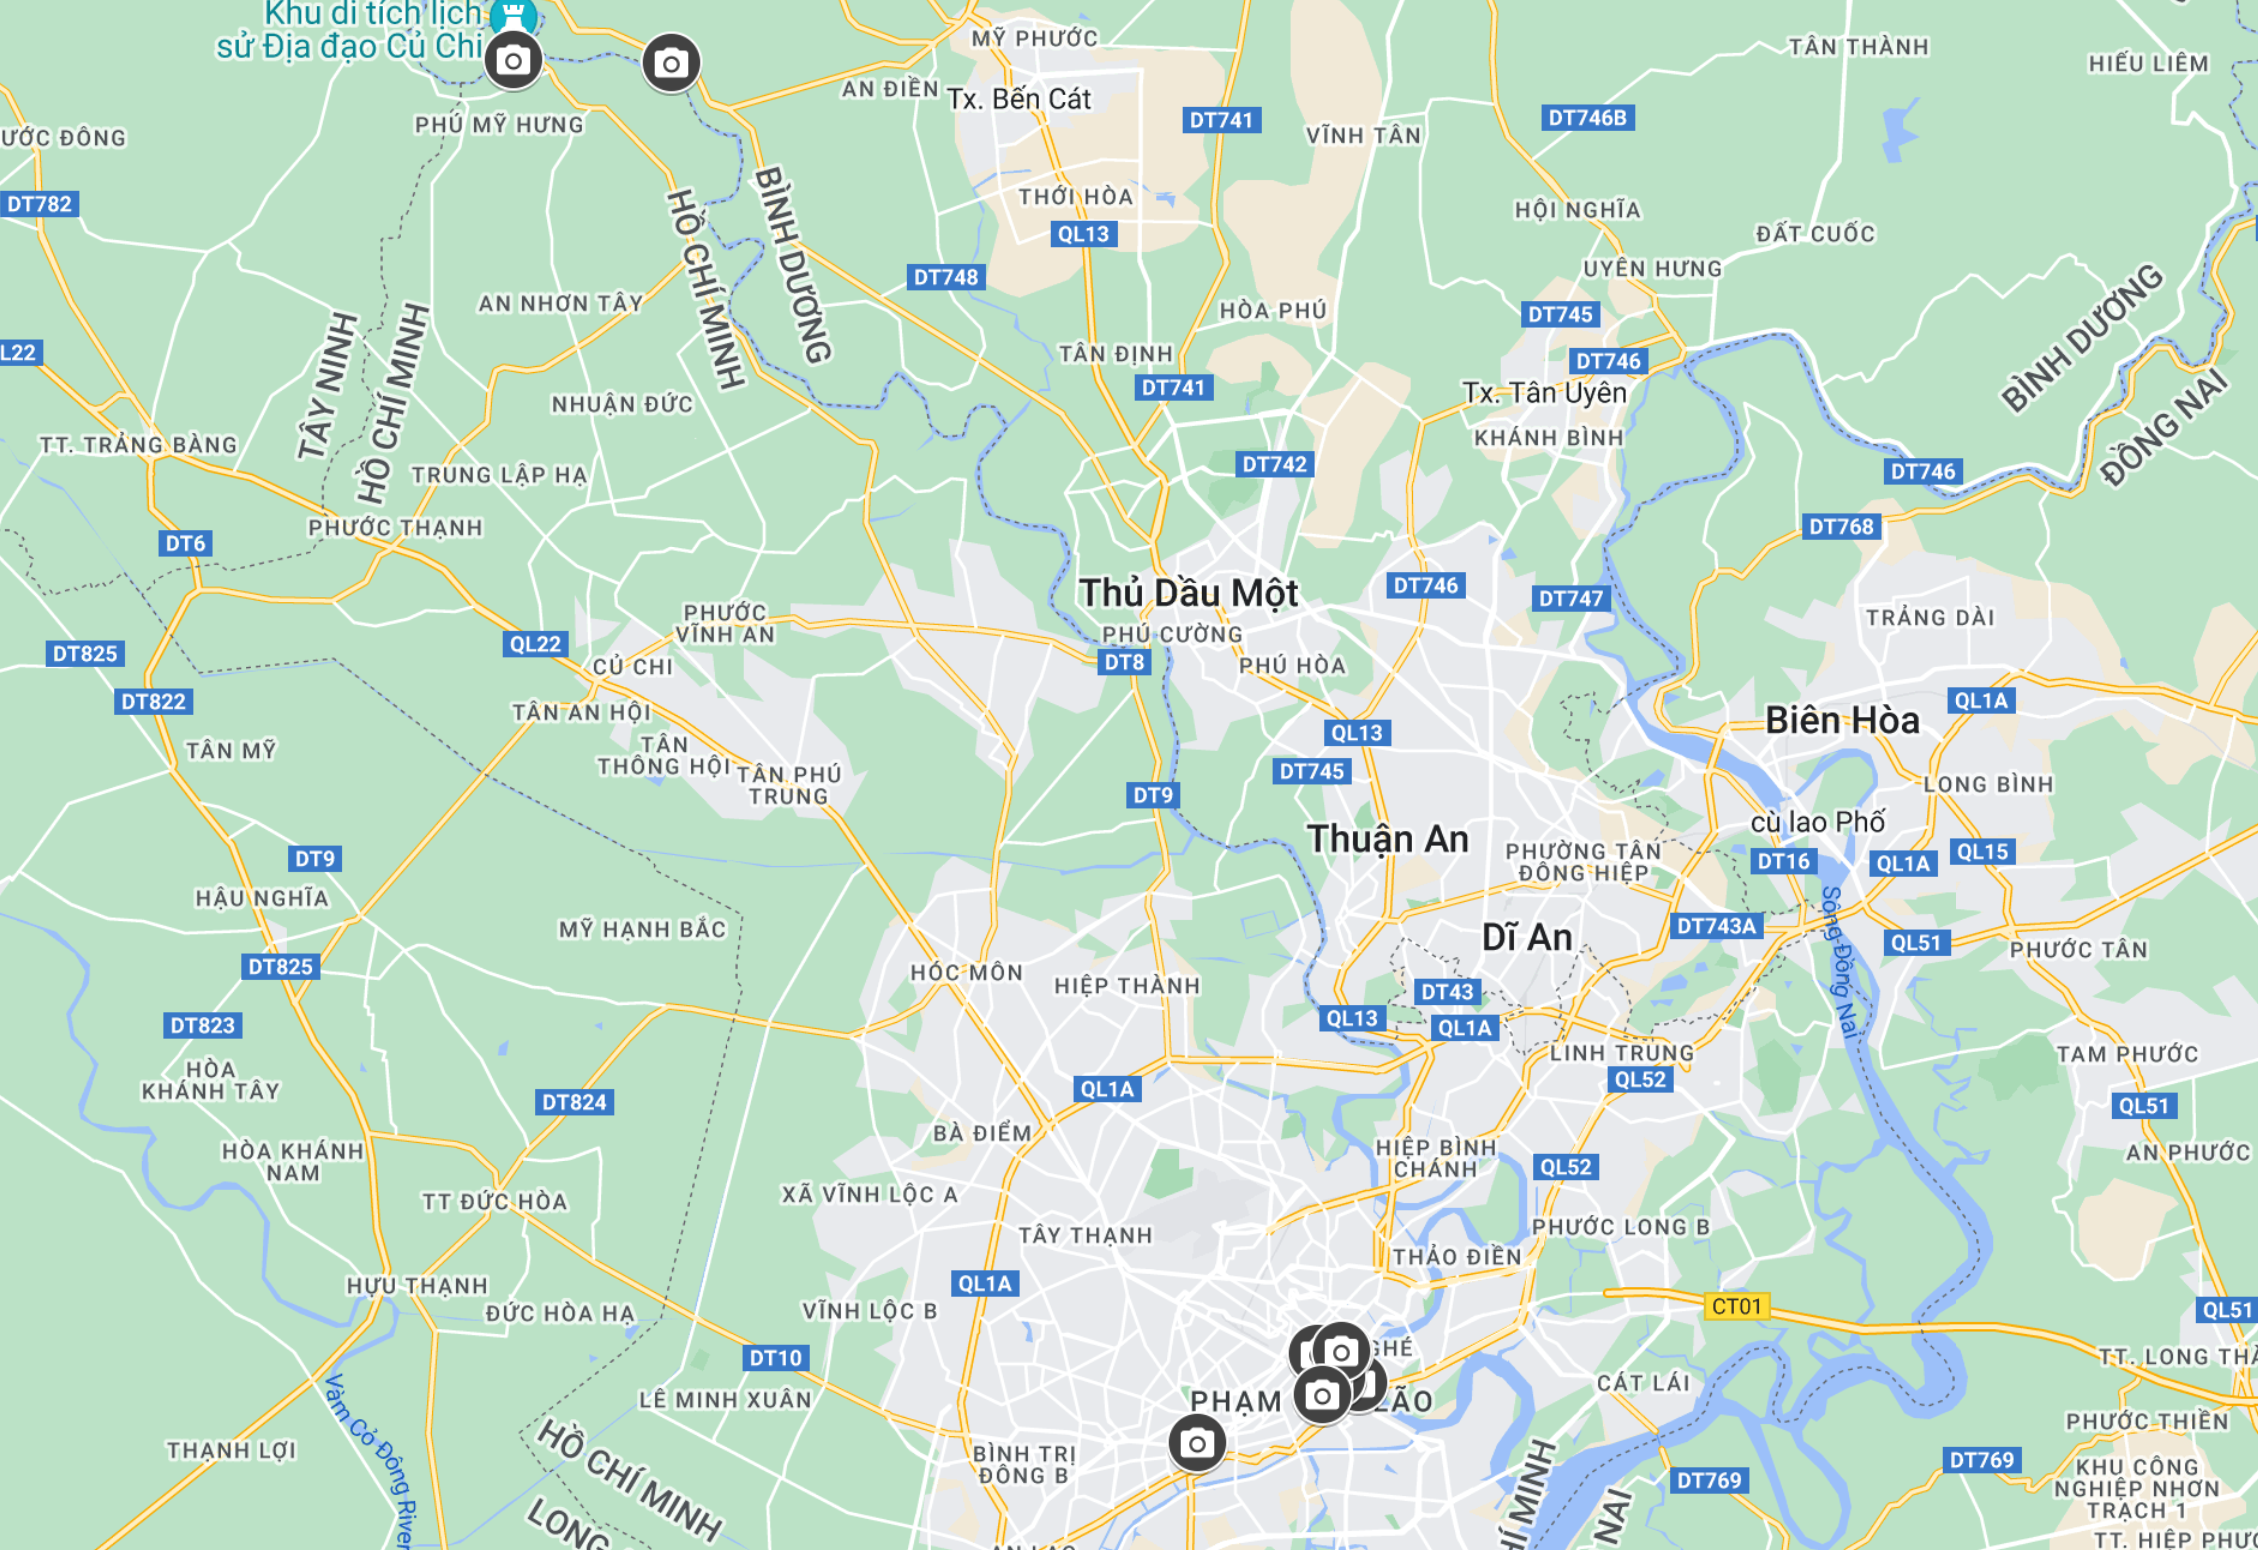 Google Maps Ho Chi Minh City (Saigon) Vietnam